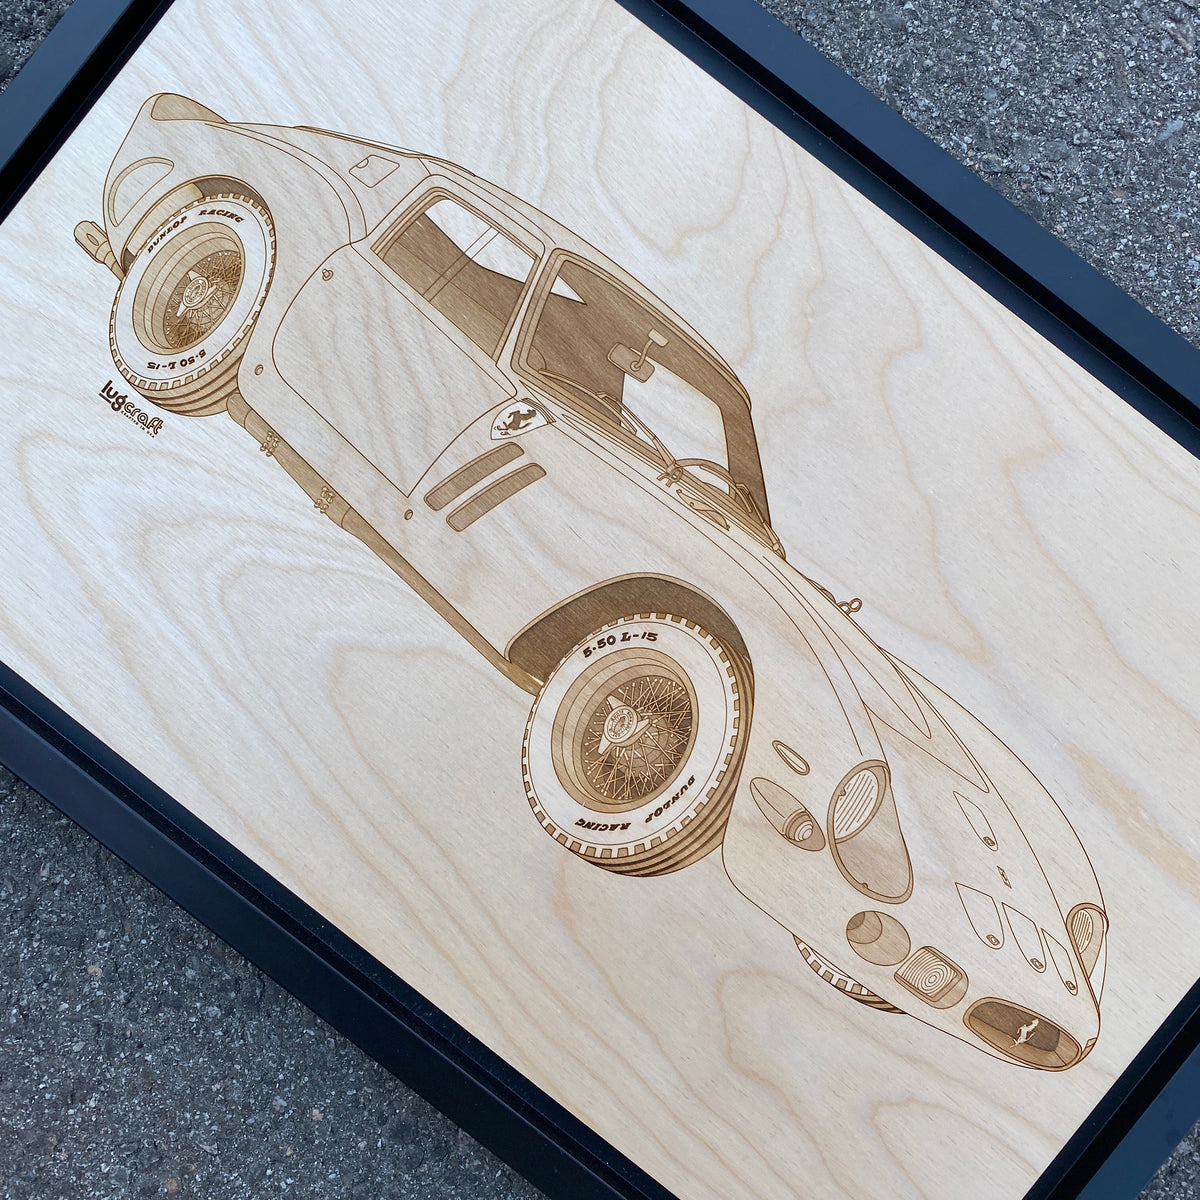 Ferrari 250 GTO Framed Wood Engraved Artwork